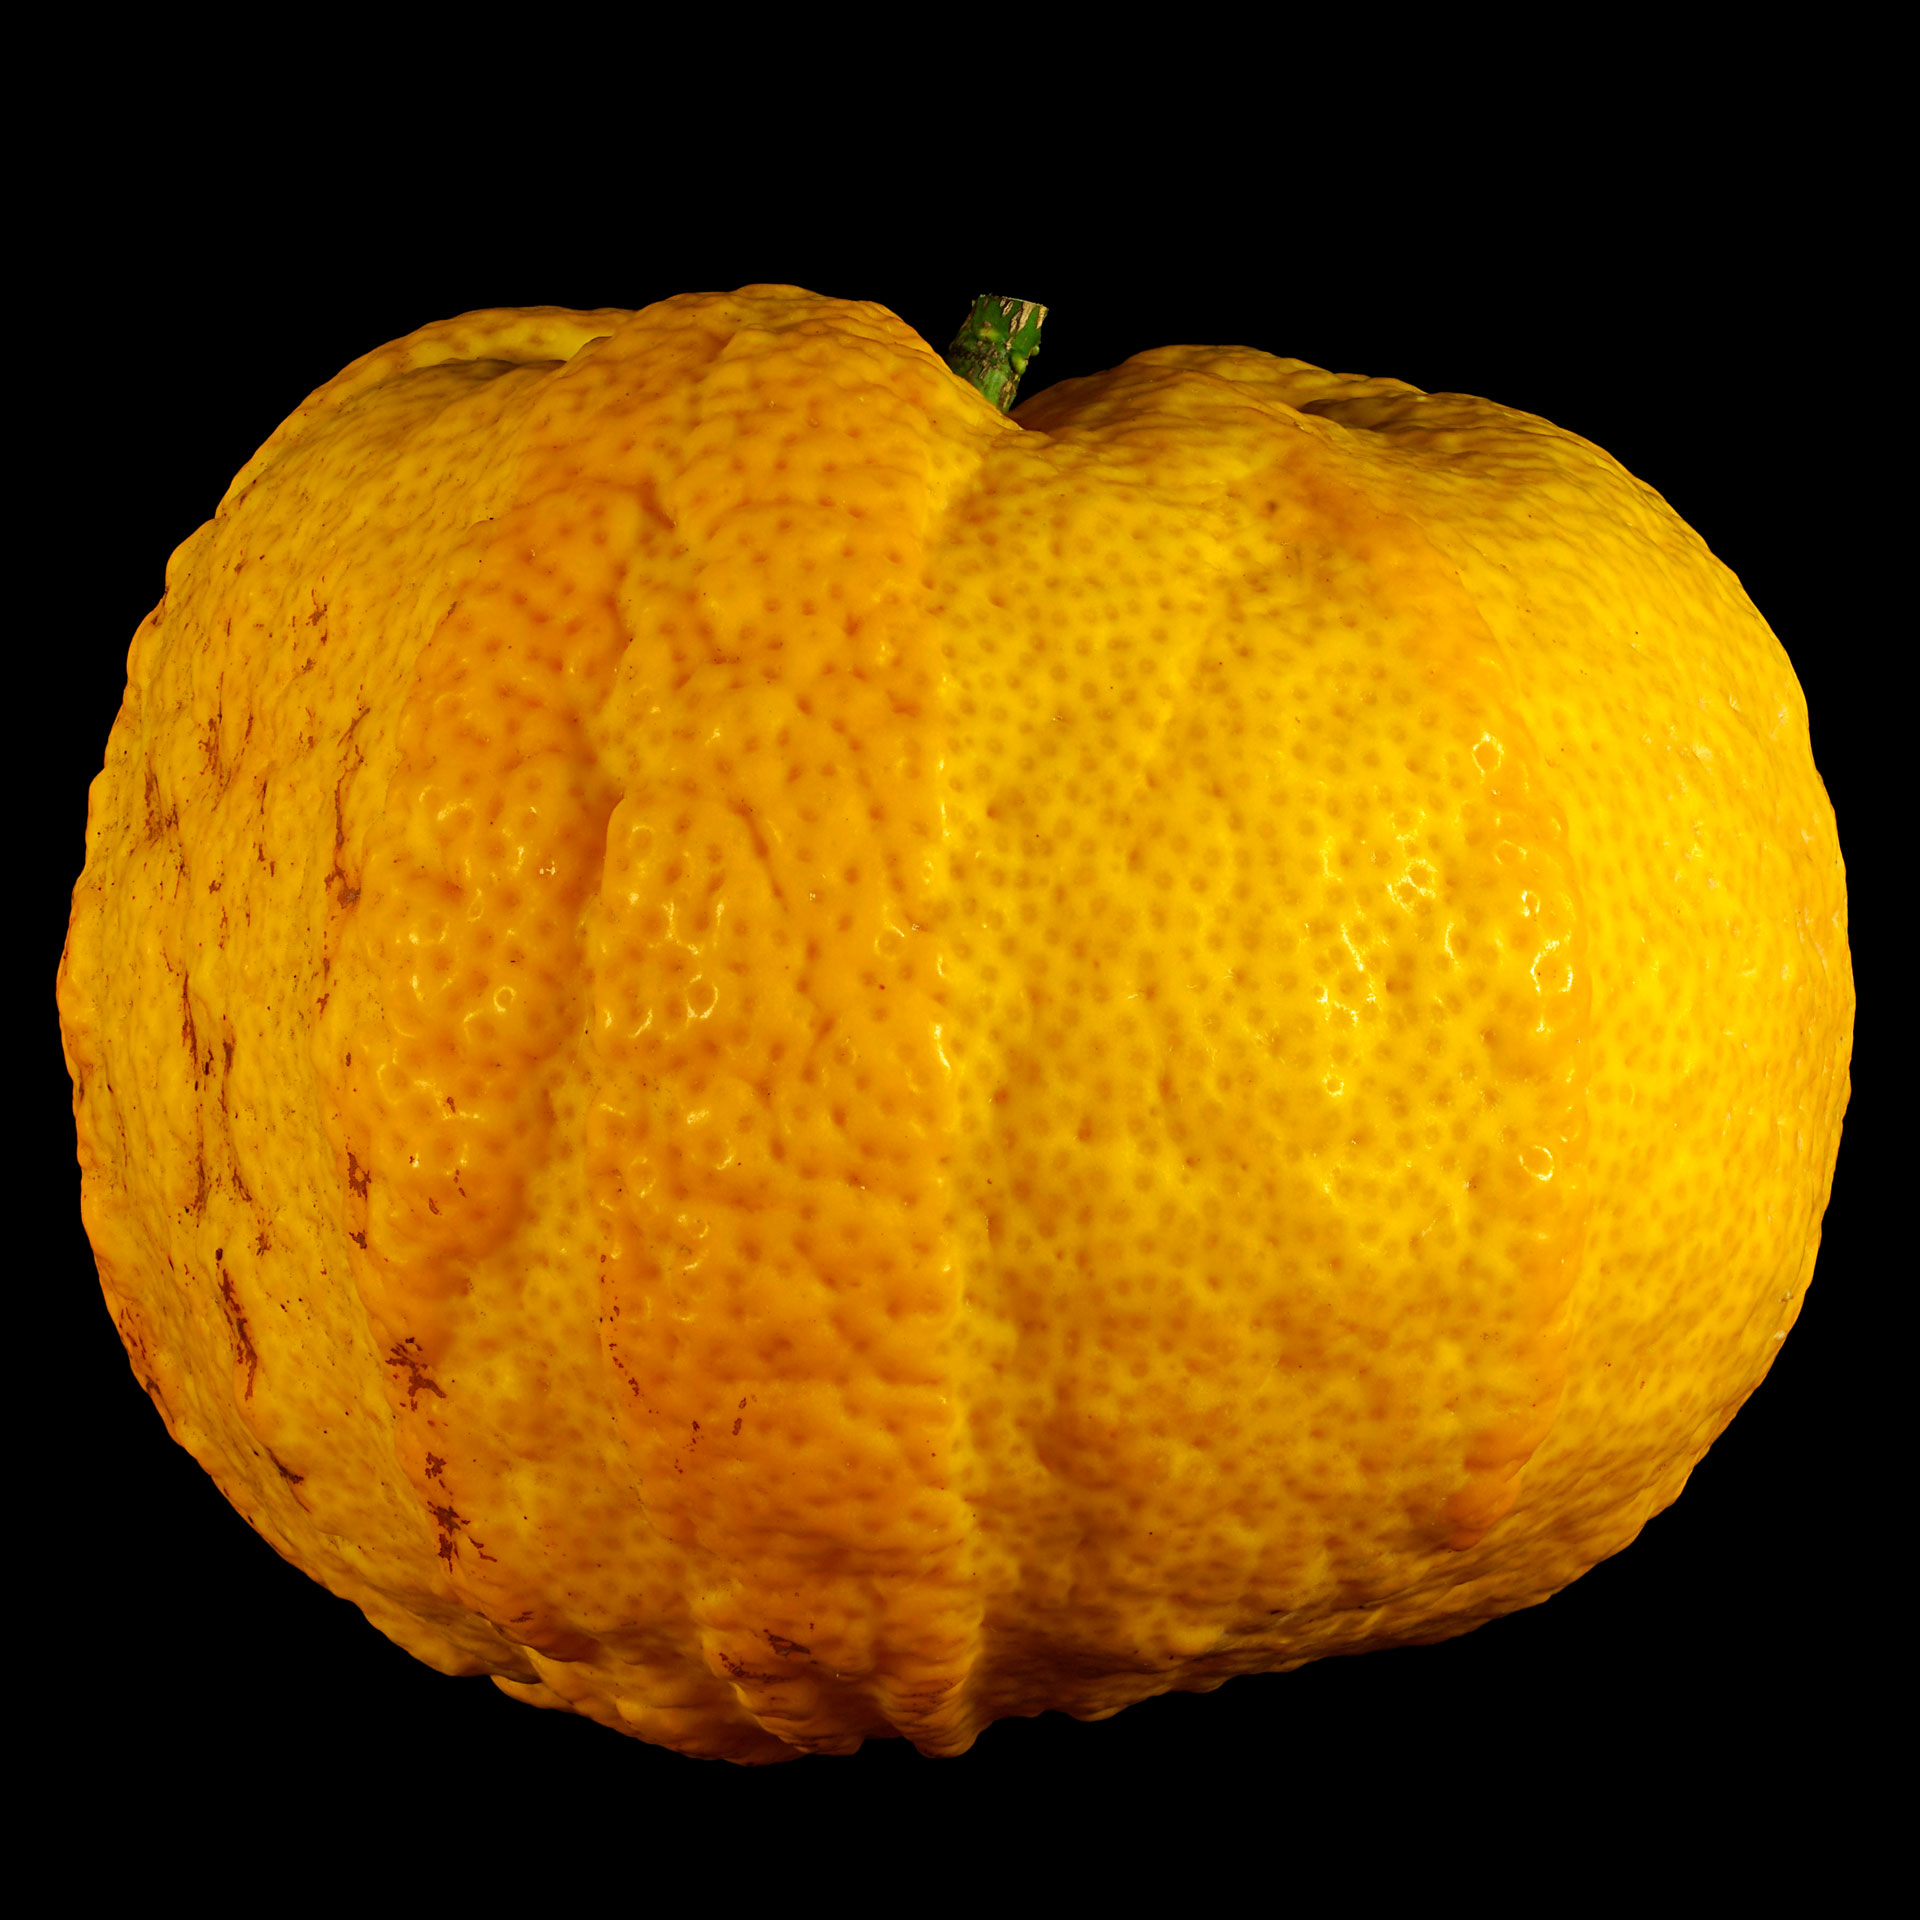 Striped bitter orange: Citrus × aurantium ‚Fasciata‘ (ripe)